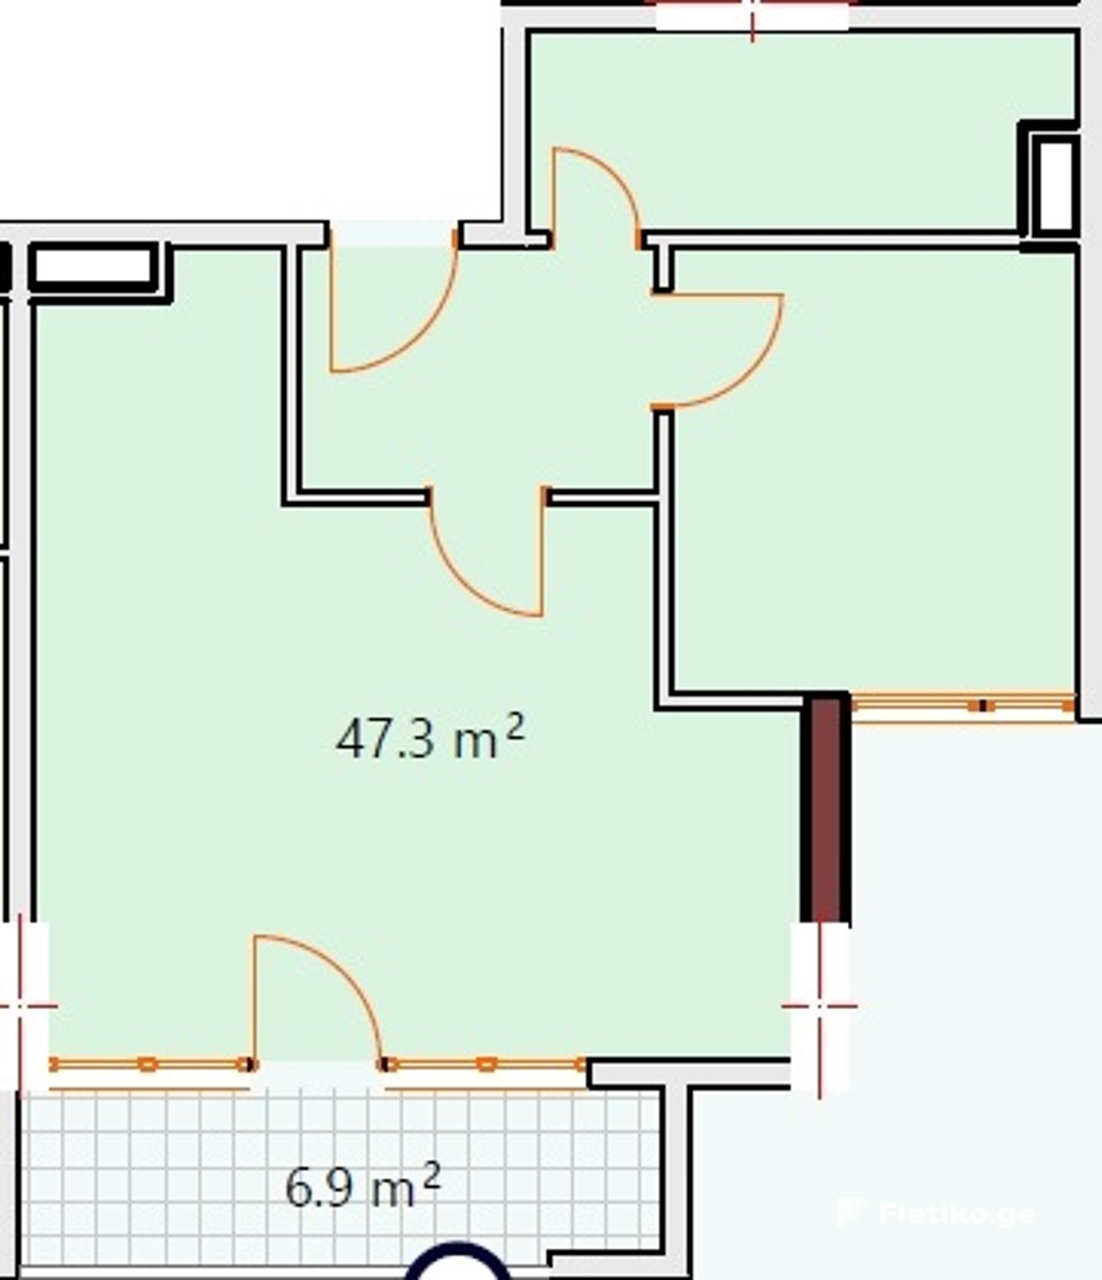 1-Bedroom Block 2